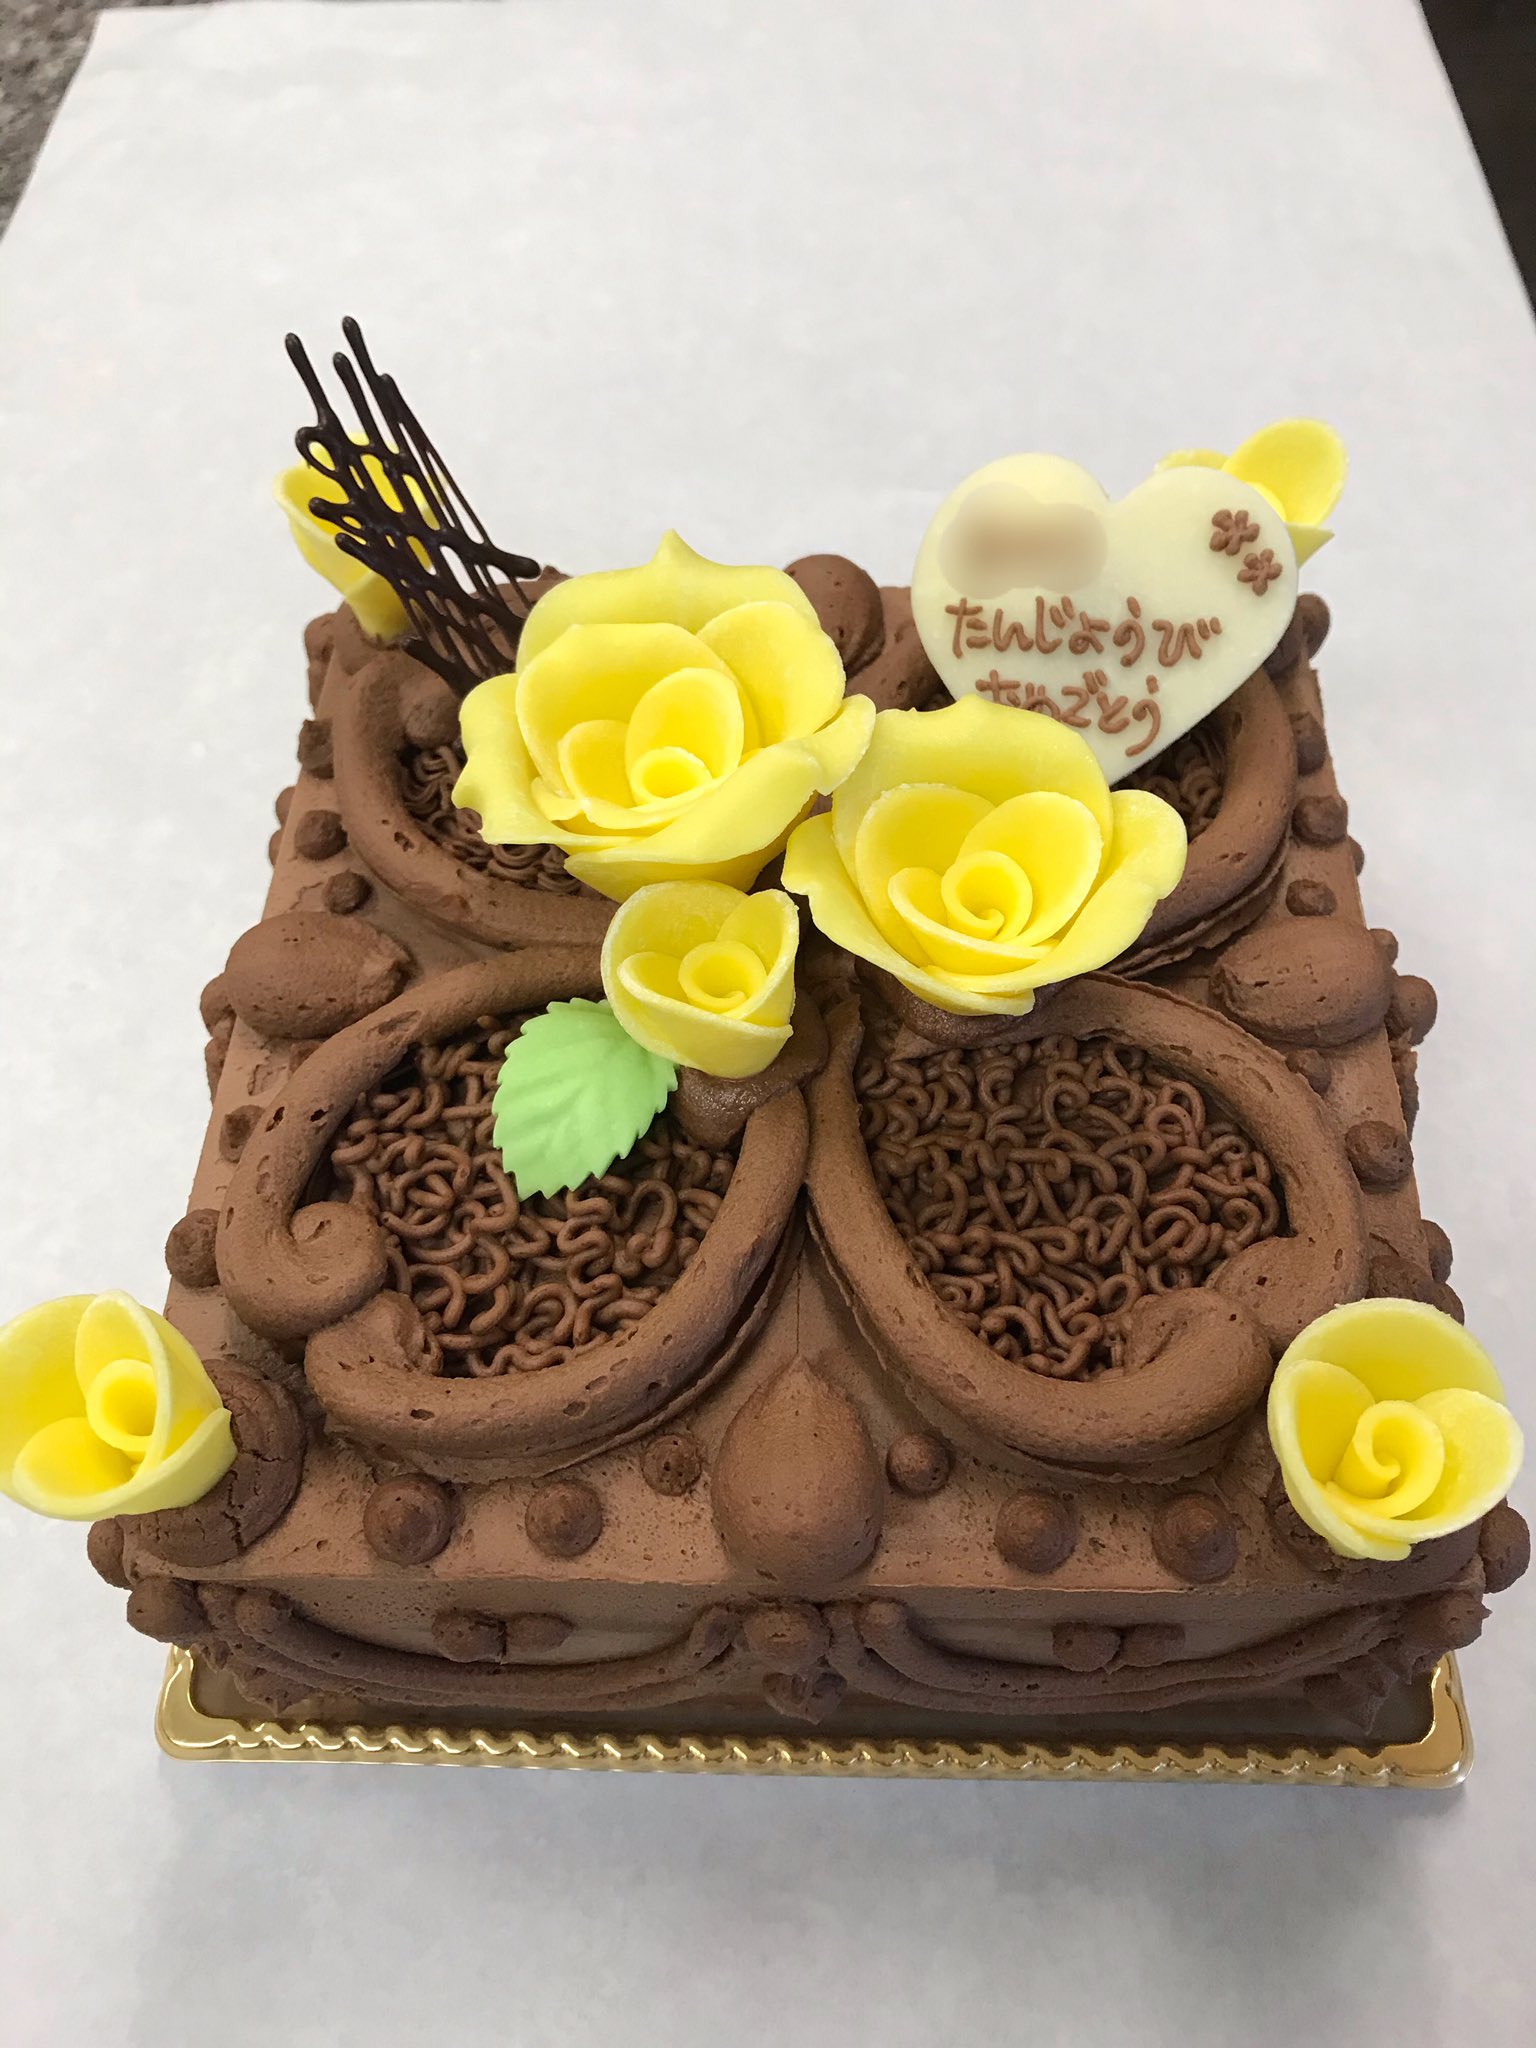 菓子工房小さなもみの木 四角いチョコレートケーキのデコレーションです 黄色い薔薇も素敵ですね 小さなもみの木 オリジナルデコレーションケーキ T Co Nfrua2mxqt Twitter